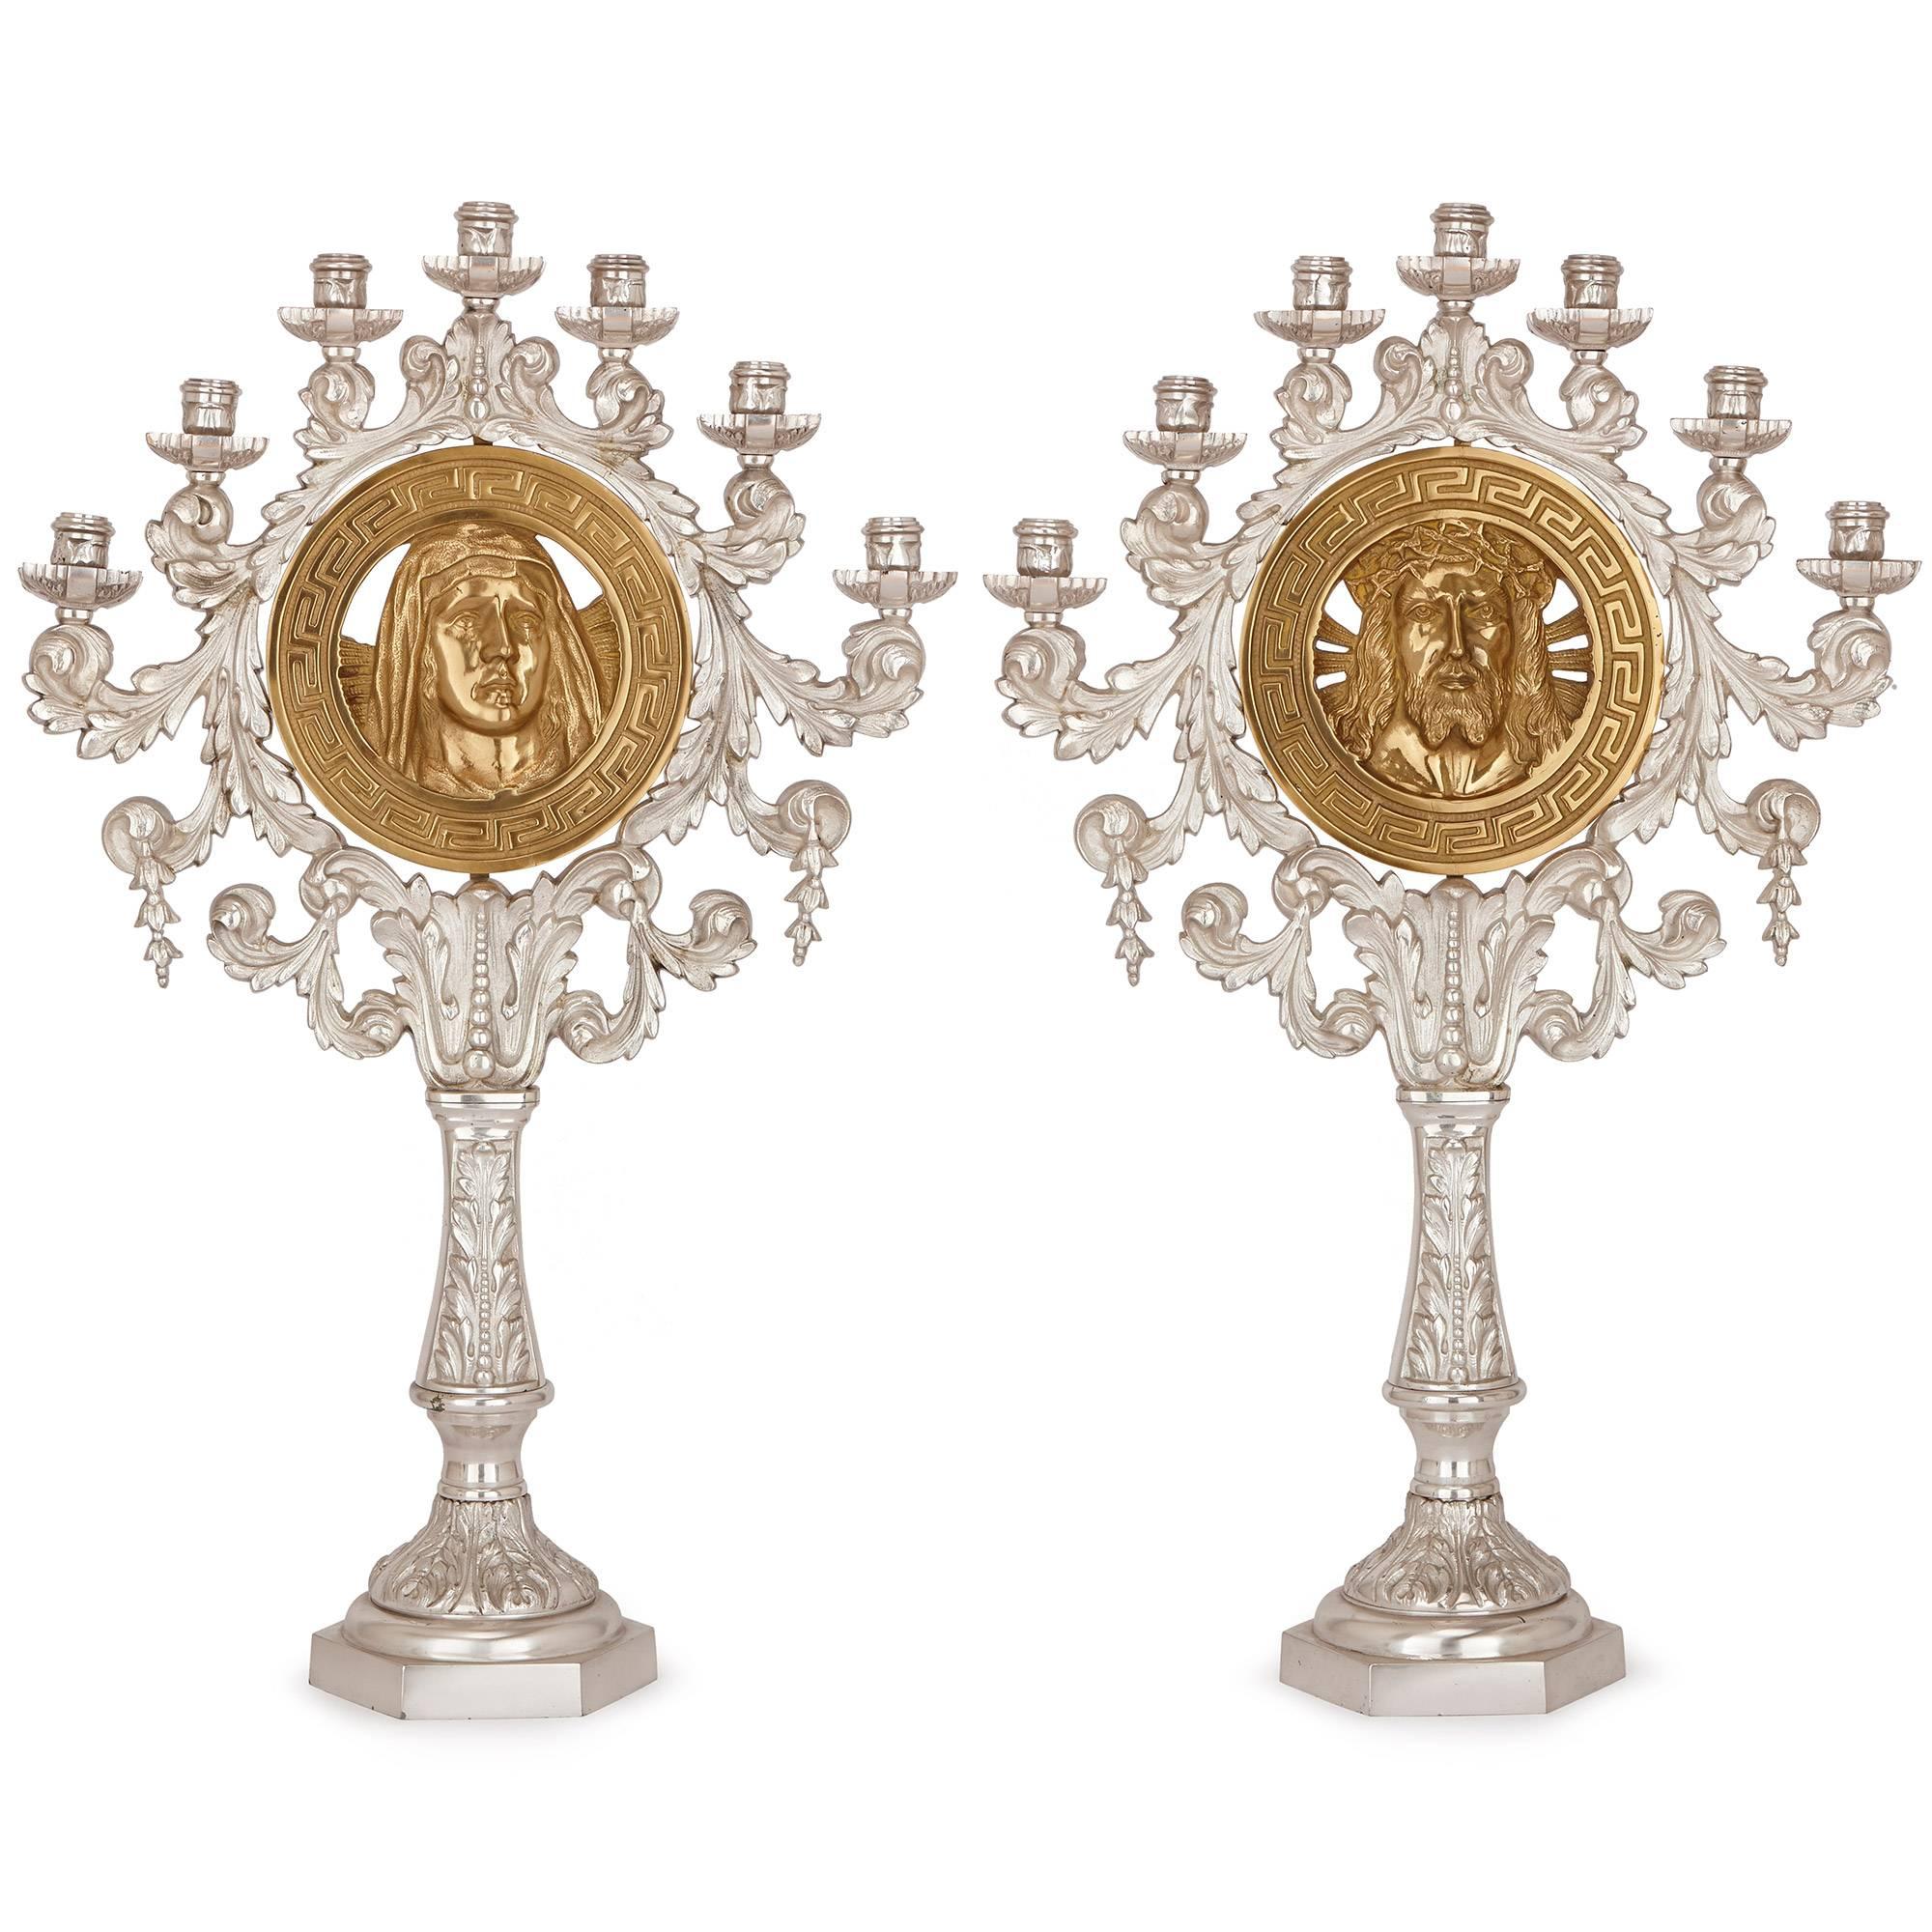 Paire de candélabres français en bronze doré et argenté, représentant Jésus et la Vierge